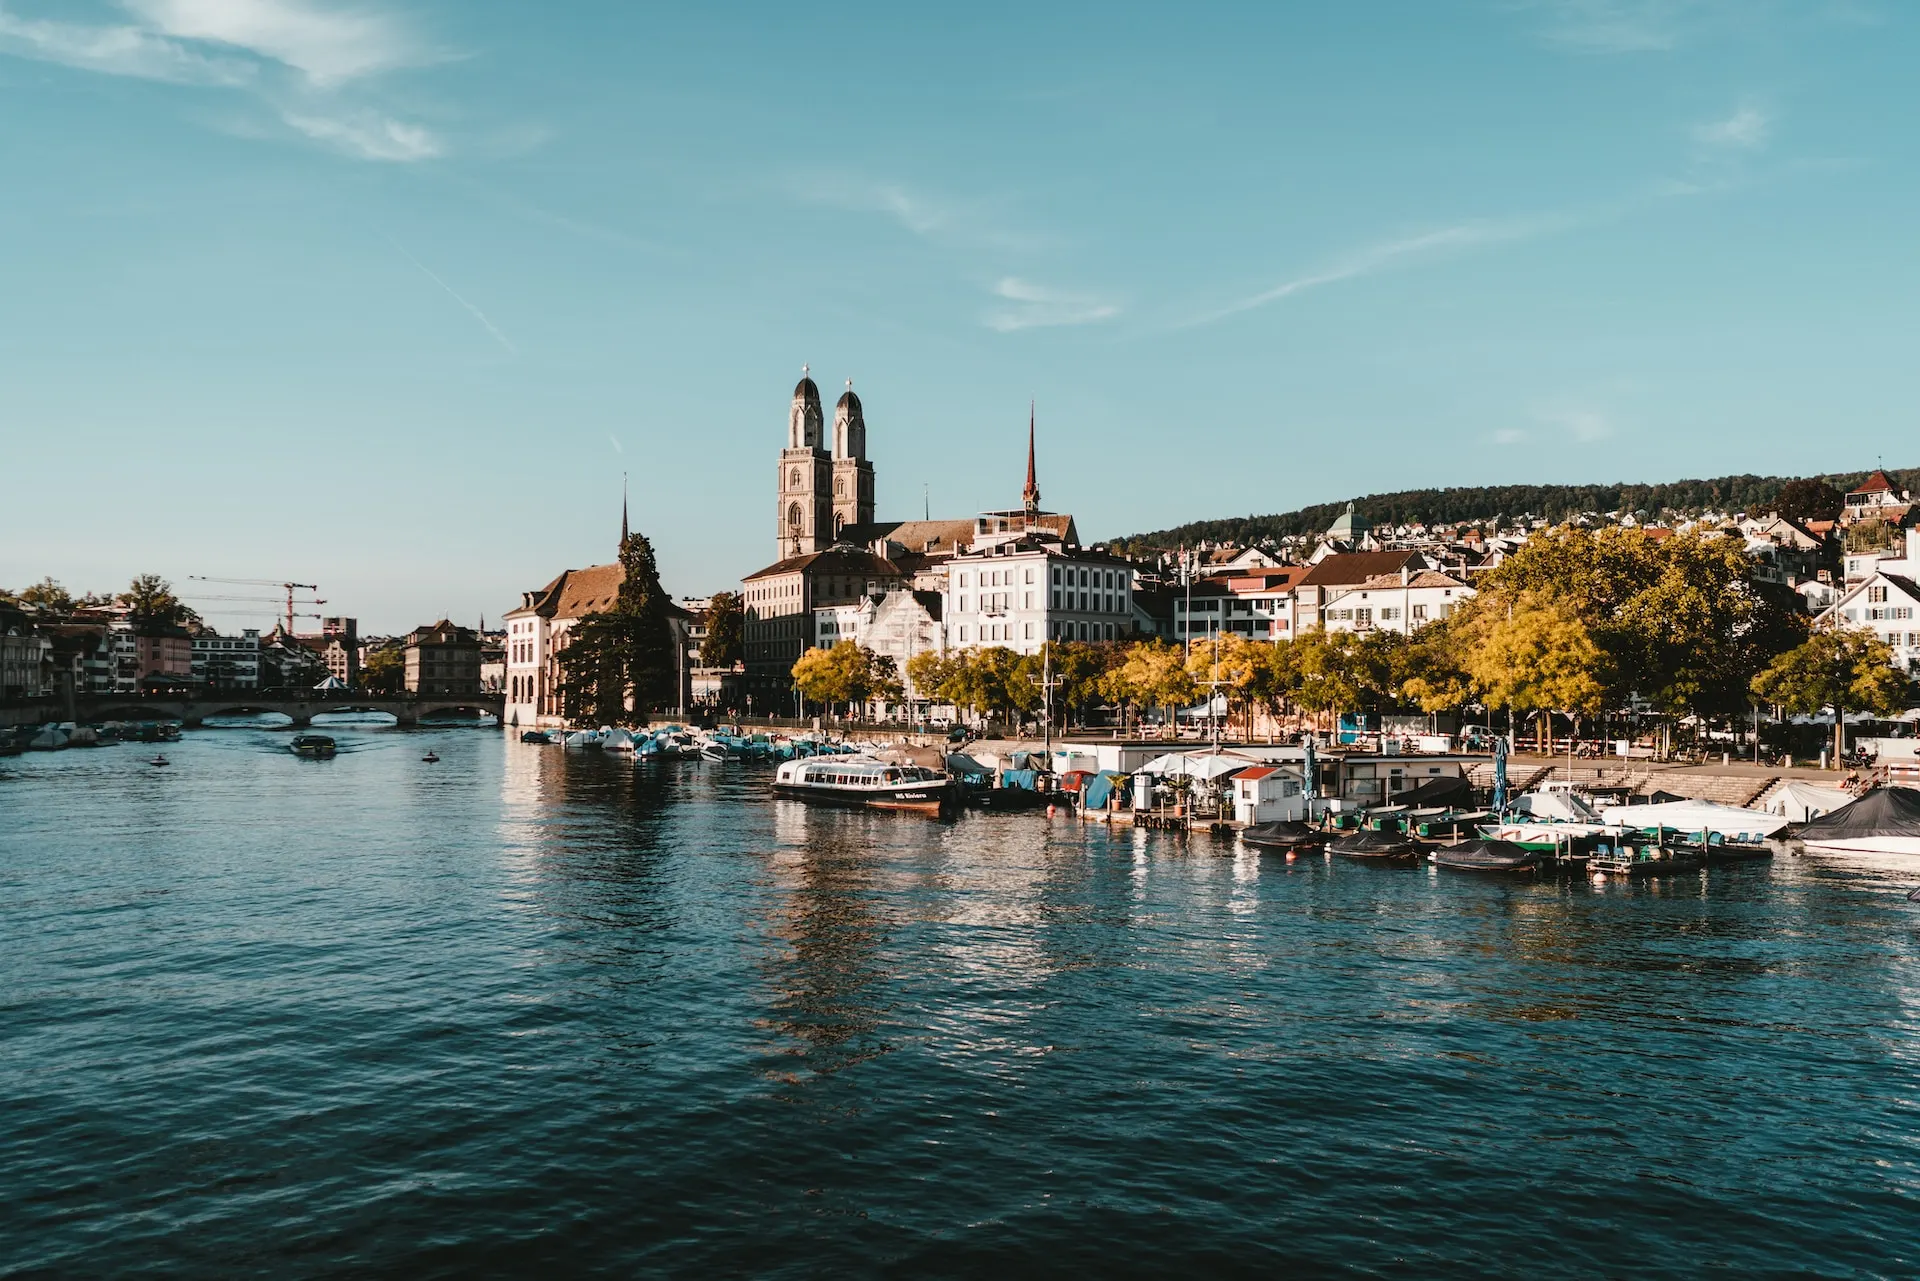 Zurich lake